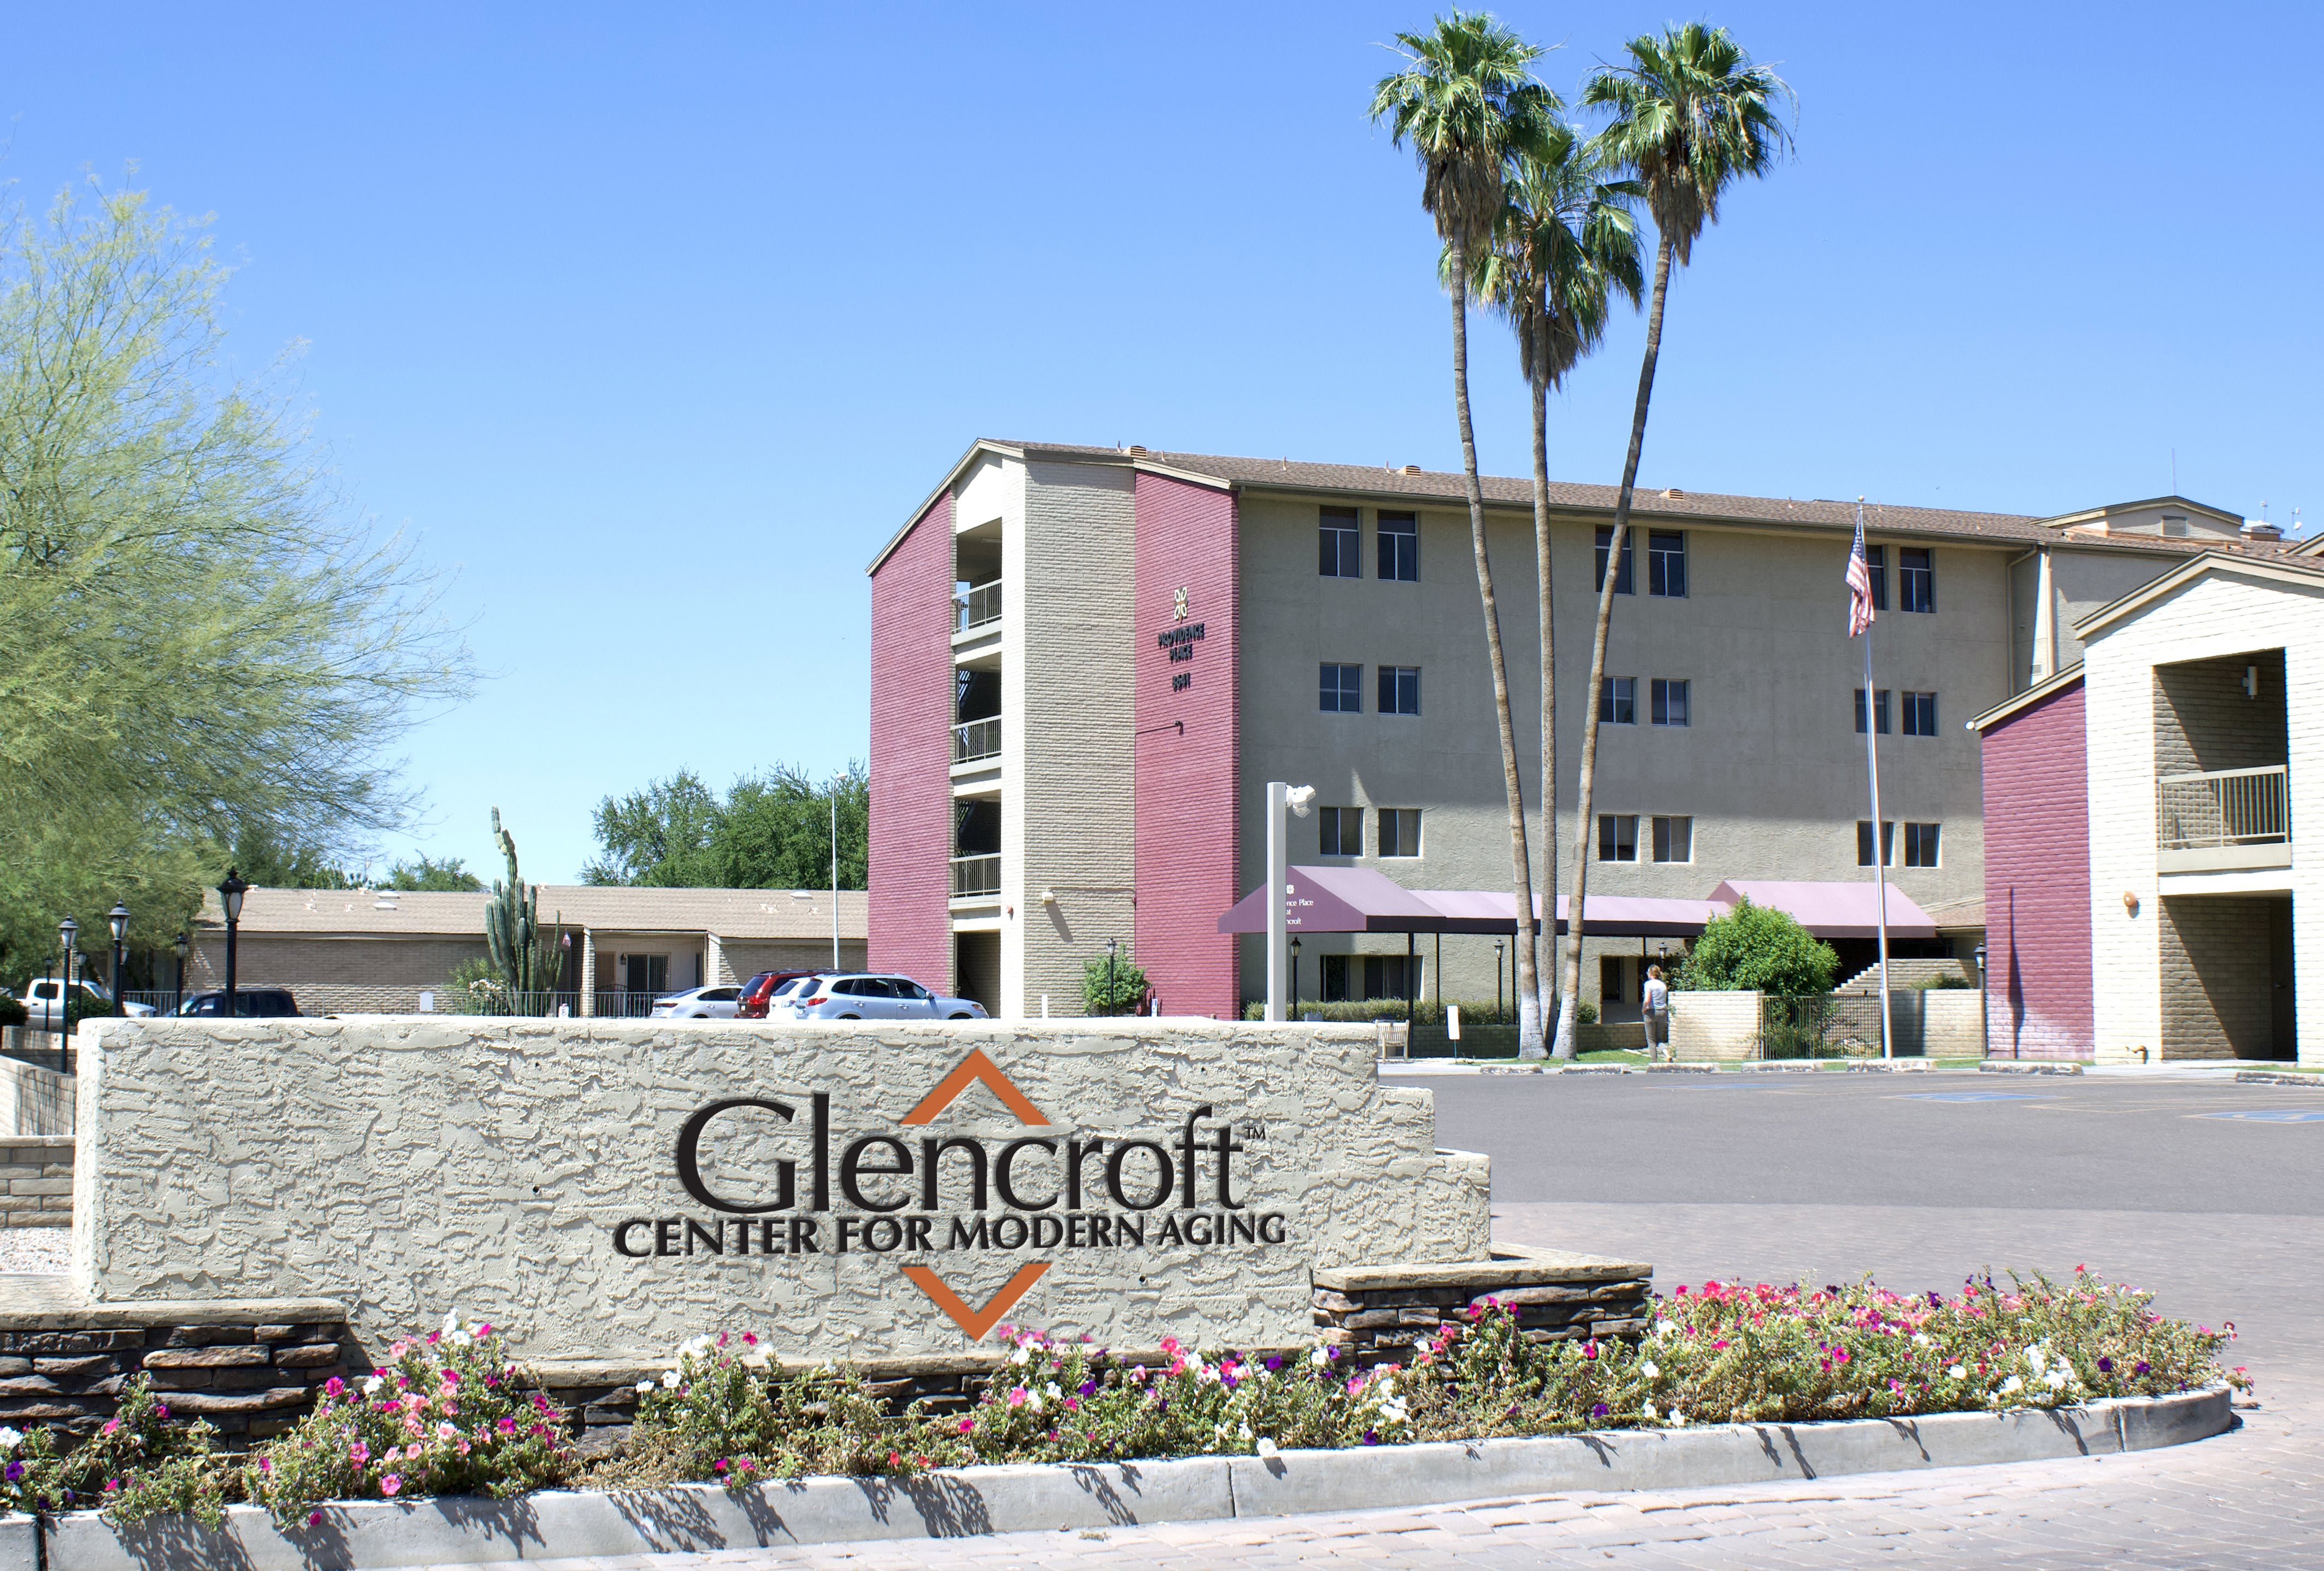 Glencroft Center For Modern Aging community exterior